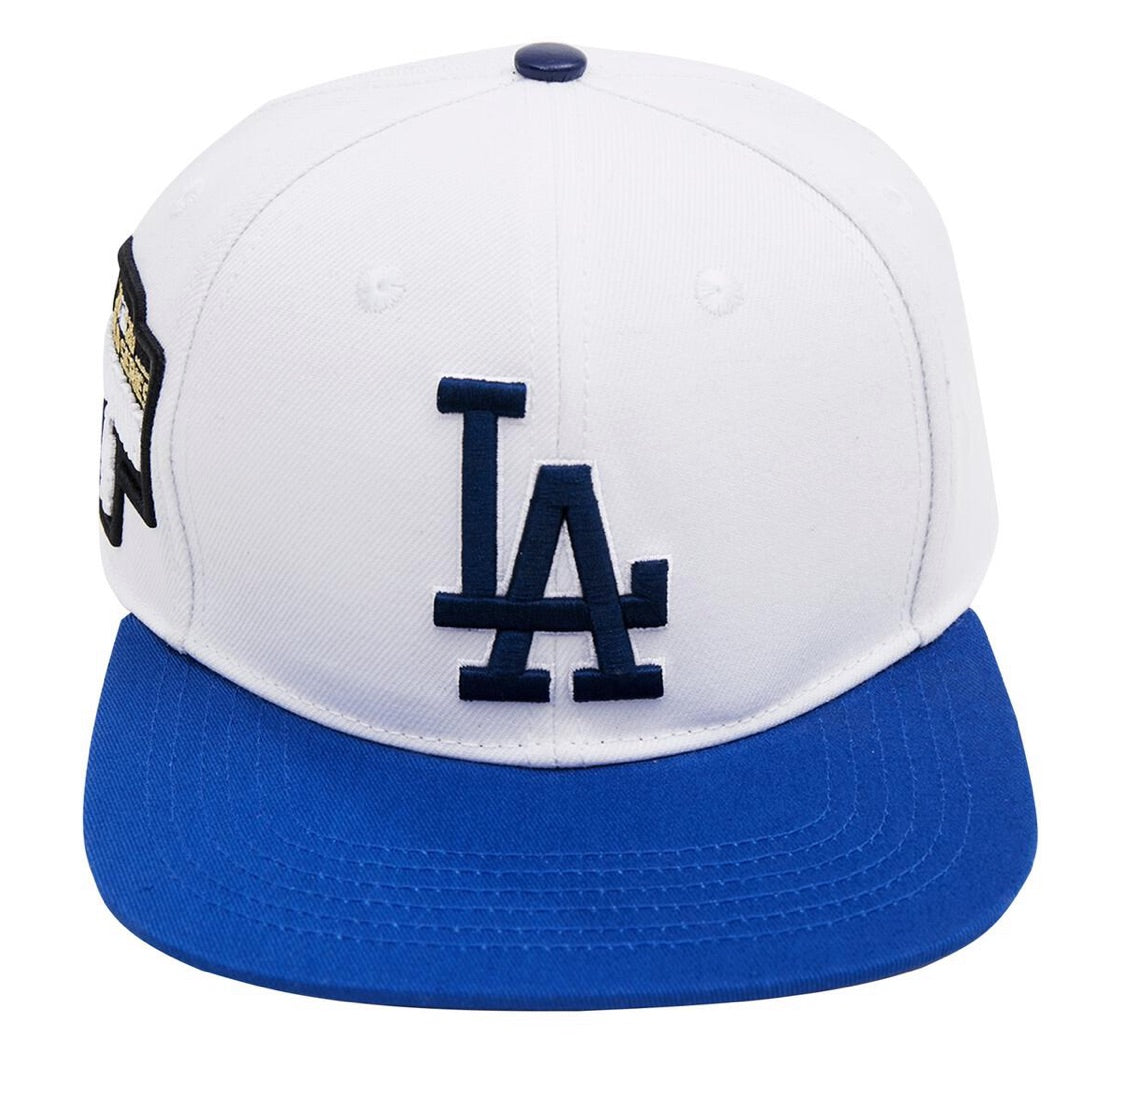 Pro Standard LA Dodgers Hat